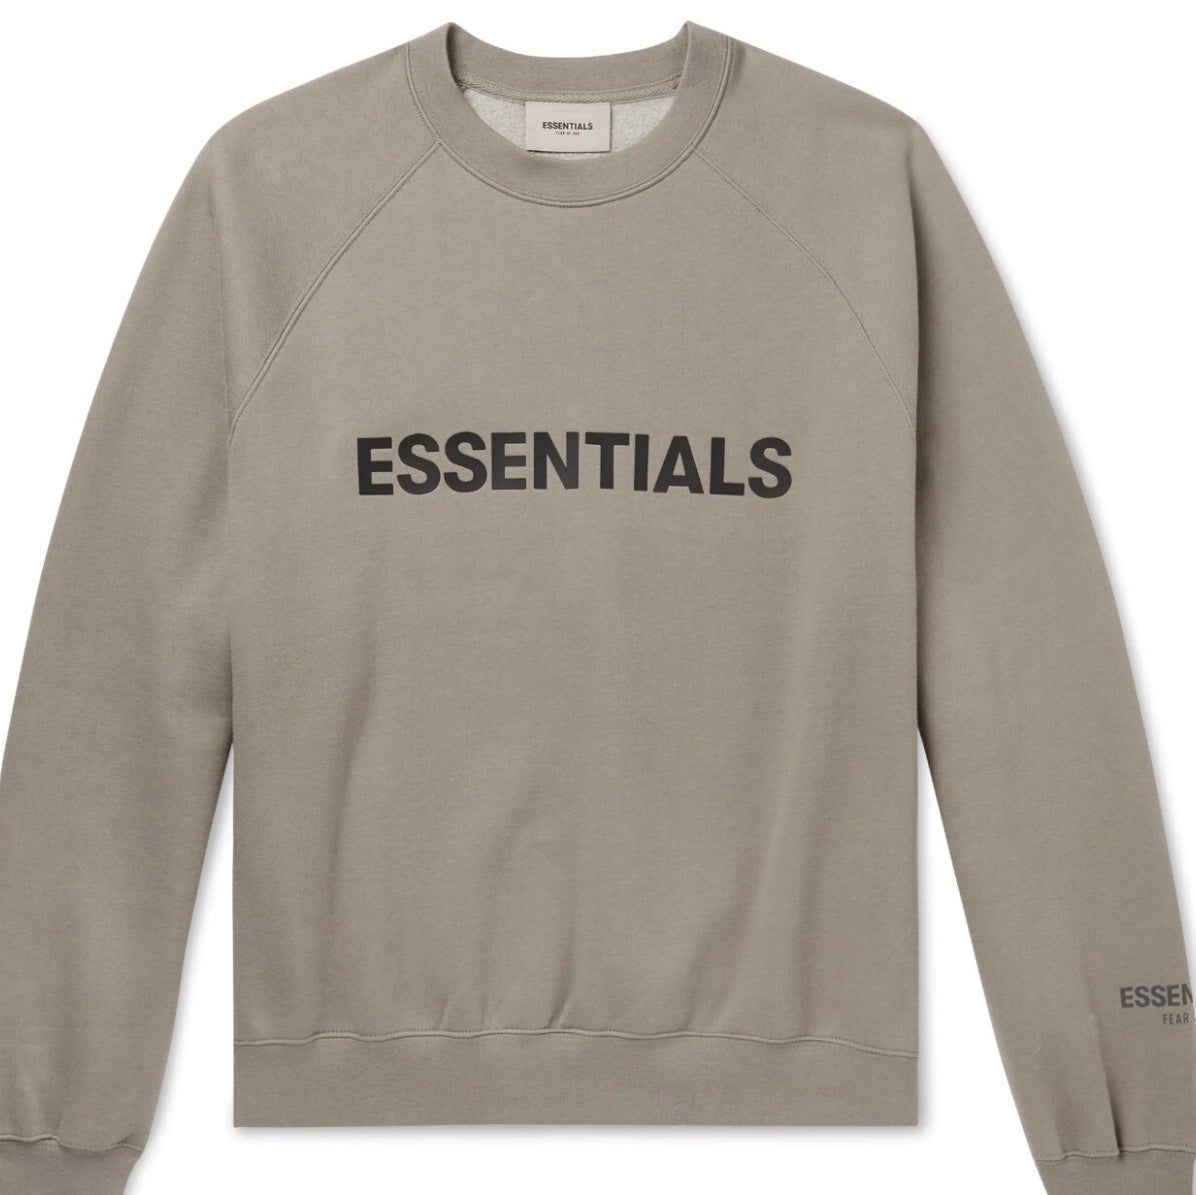 Essentials FOG SS20 Tan Sweater